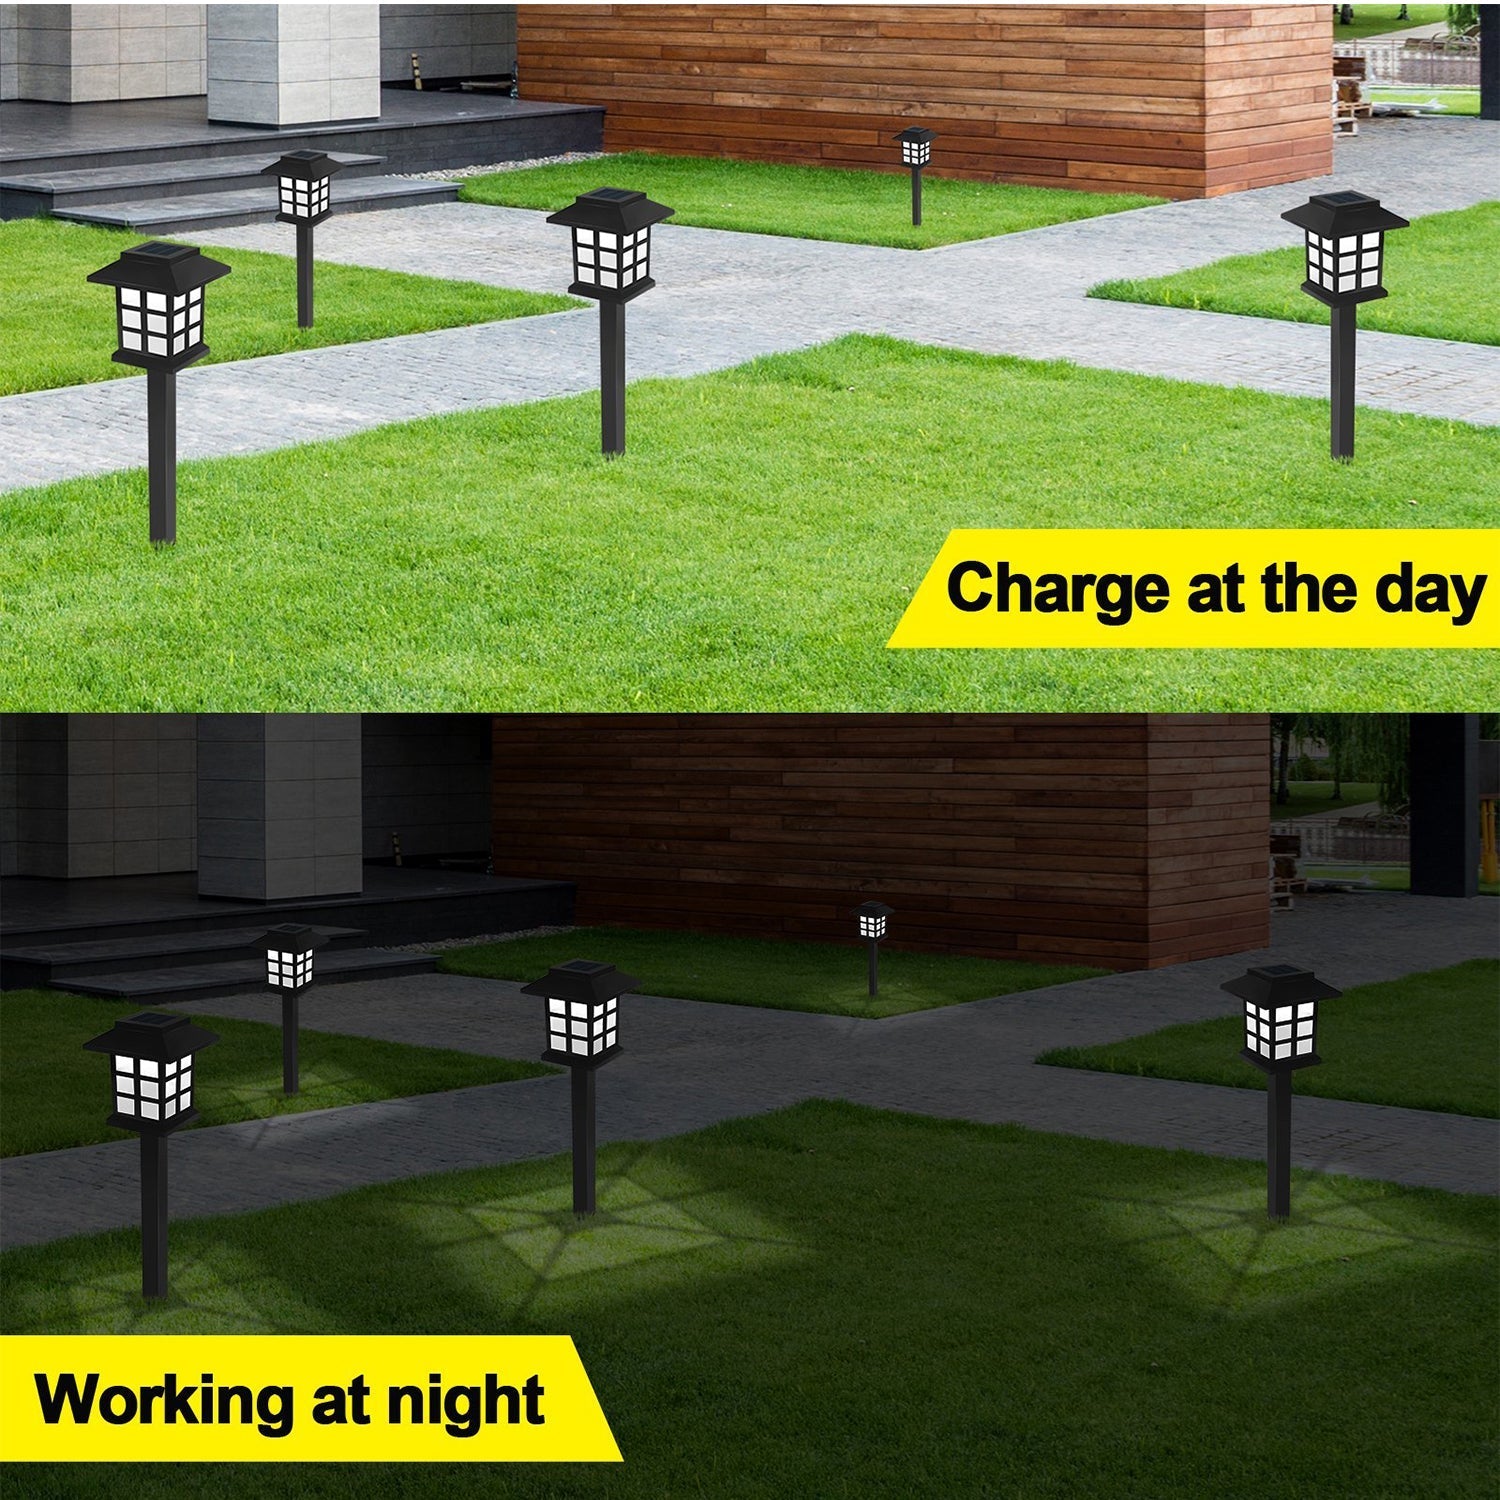 6625 Solar Garden Lights LED Outdoor Stake Spotlight Fixture for Garden Light (Pack of 2pc ) Dukandaily